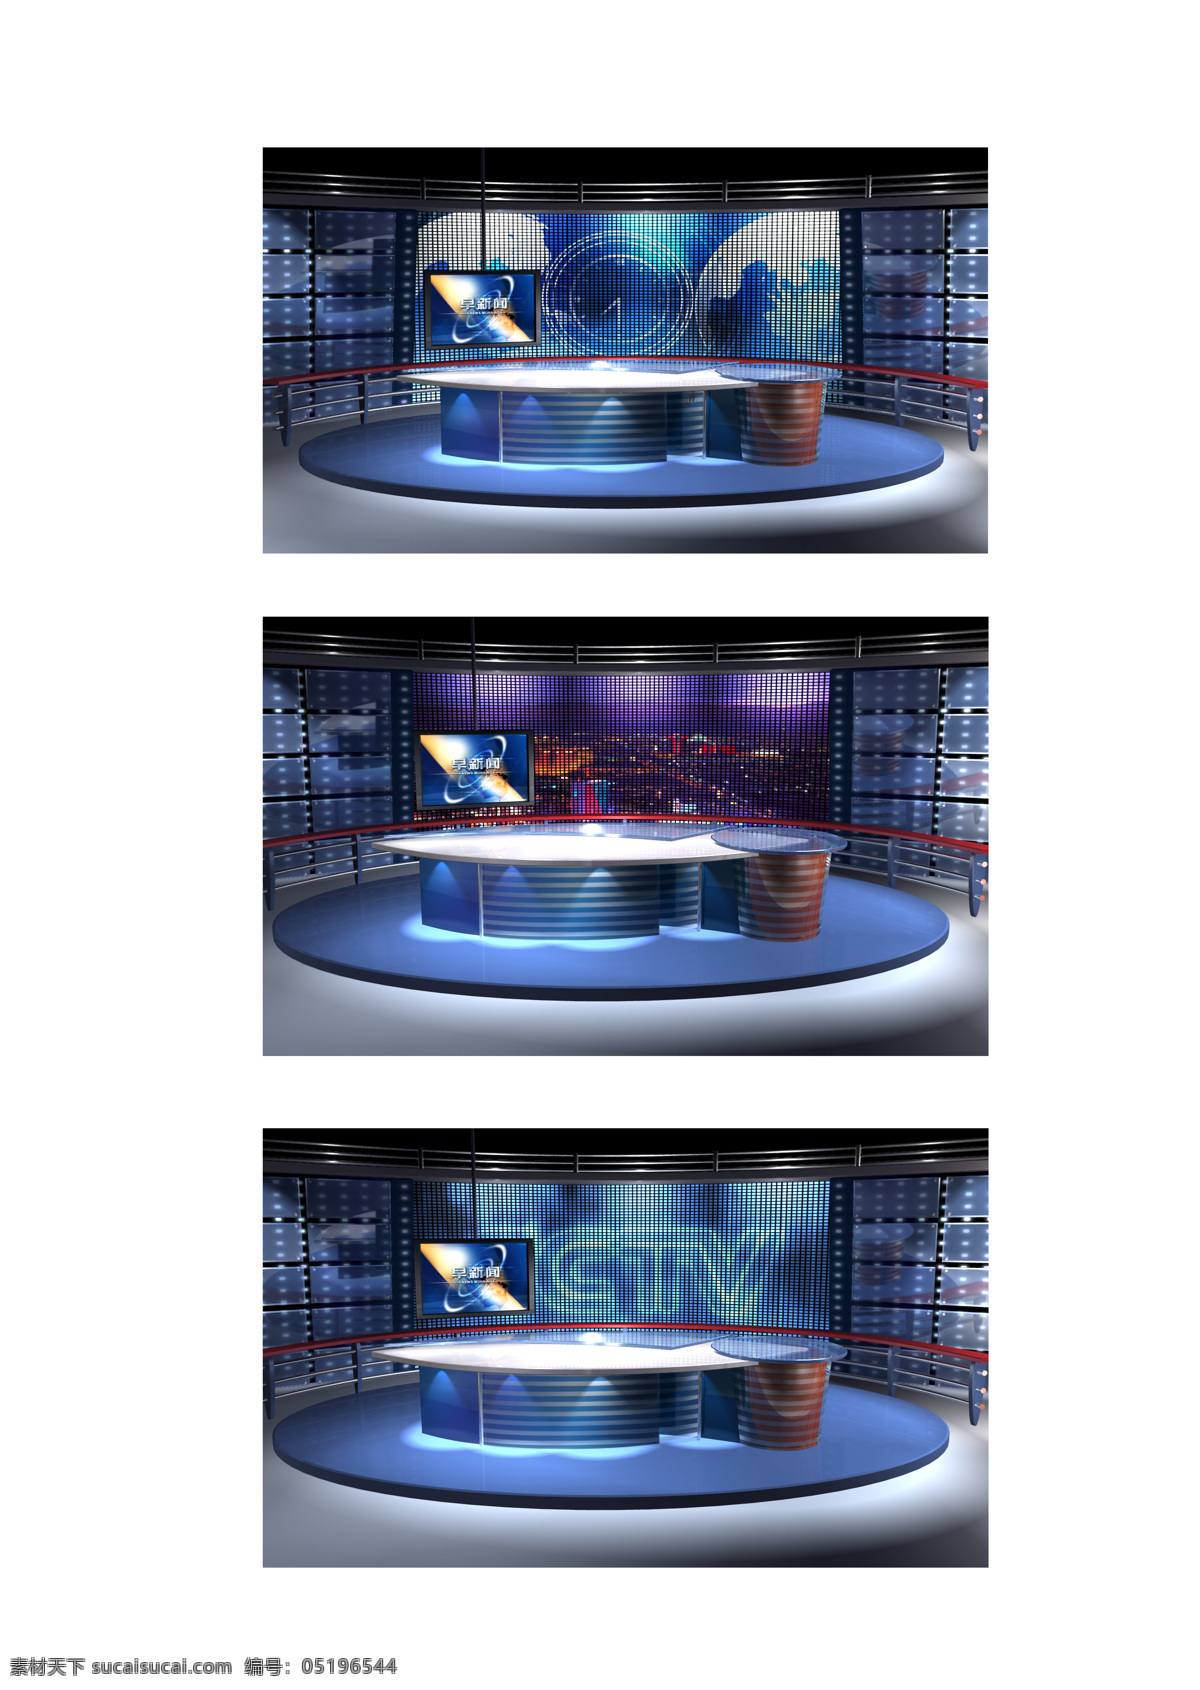 虚拟 演播室 背景 直播 电视 电视台 影棚 舞台 录像 采访 新闻 访谈 纪事 栏目 室内设计 环境设计